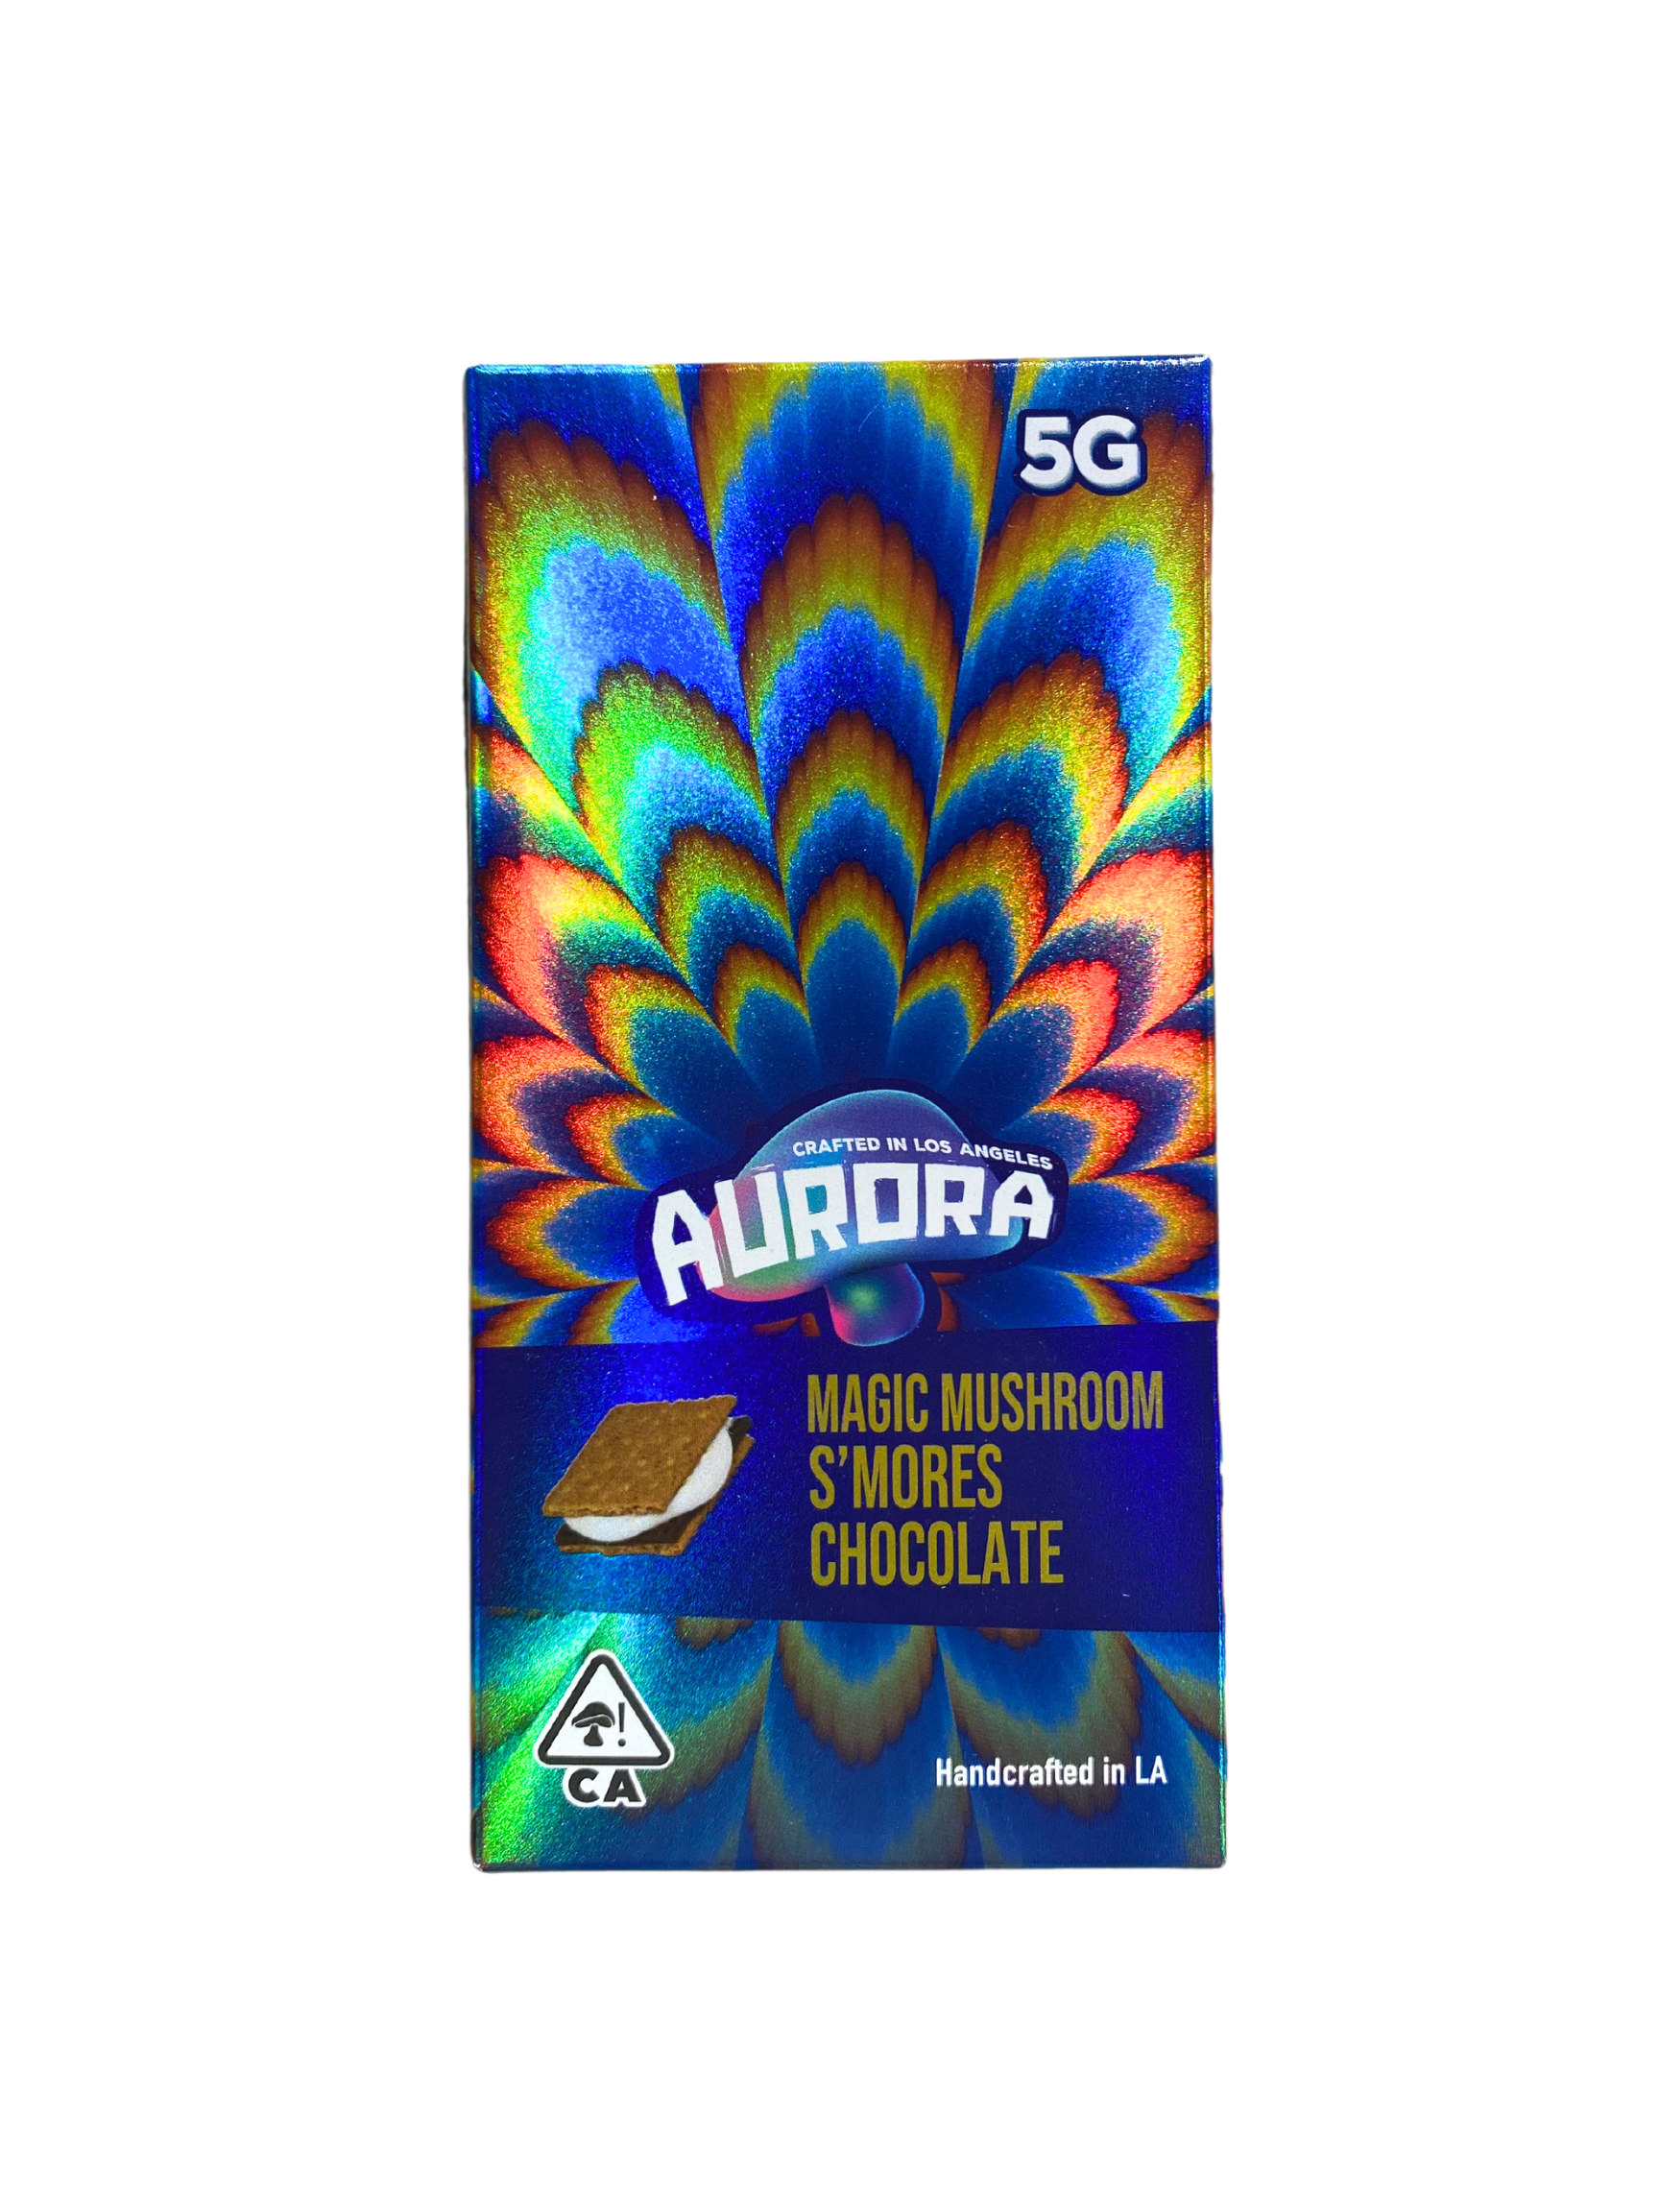 Aurora Magic Mushroom - S'mores Chocolate 5G